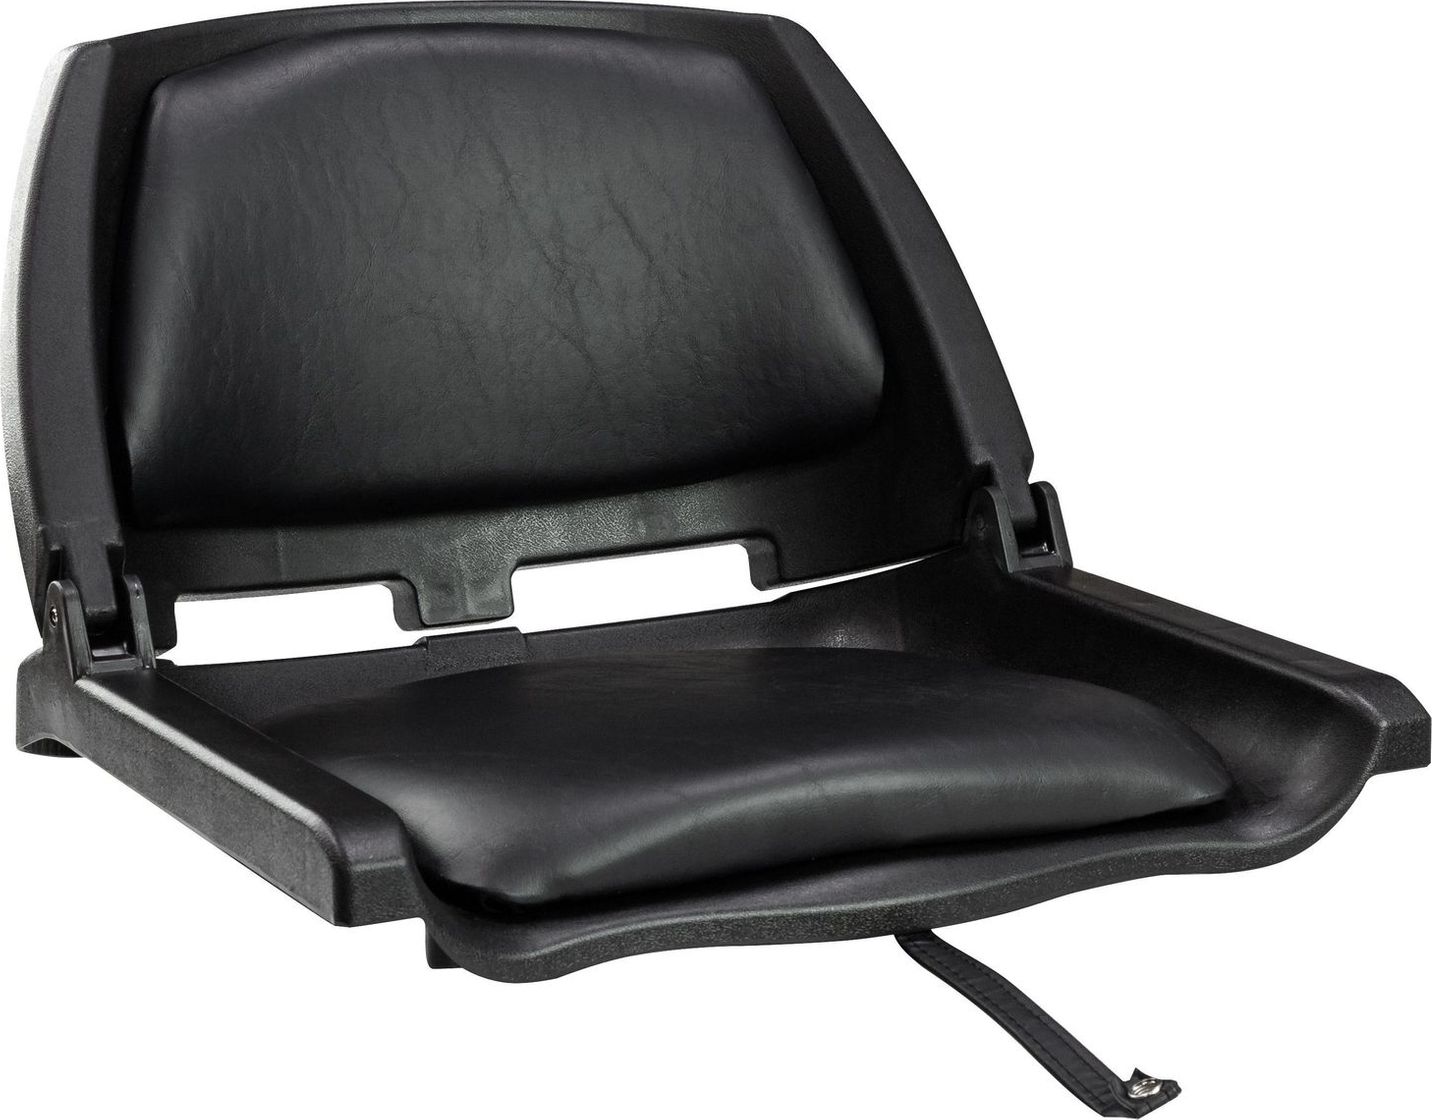 Кресло складное мягкое TRAVELER, цвет черный/черный (упаковка из 2 шт.) 1061103C_pkg_2 подставка под кресло вращающаяся с креплением к баночке надувной лодки упаковка из 2 шт c12565 pkg 2